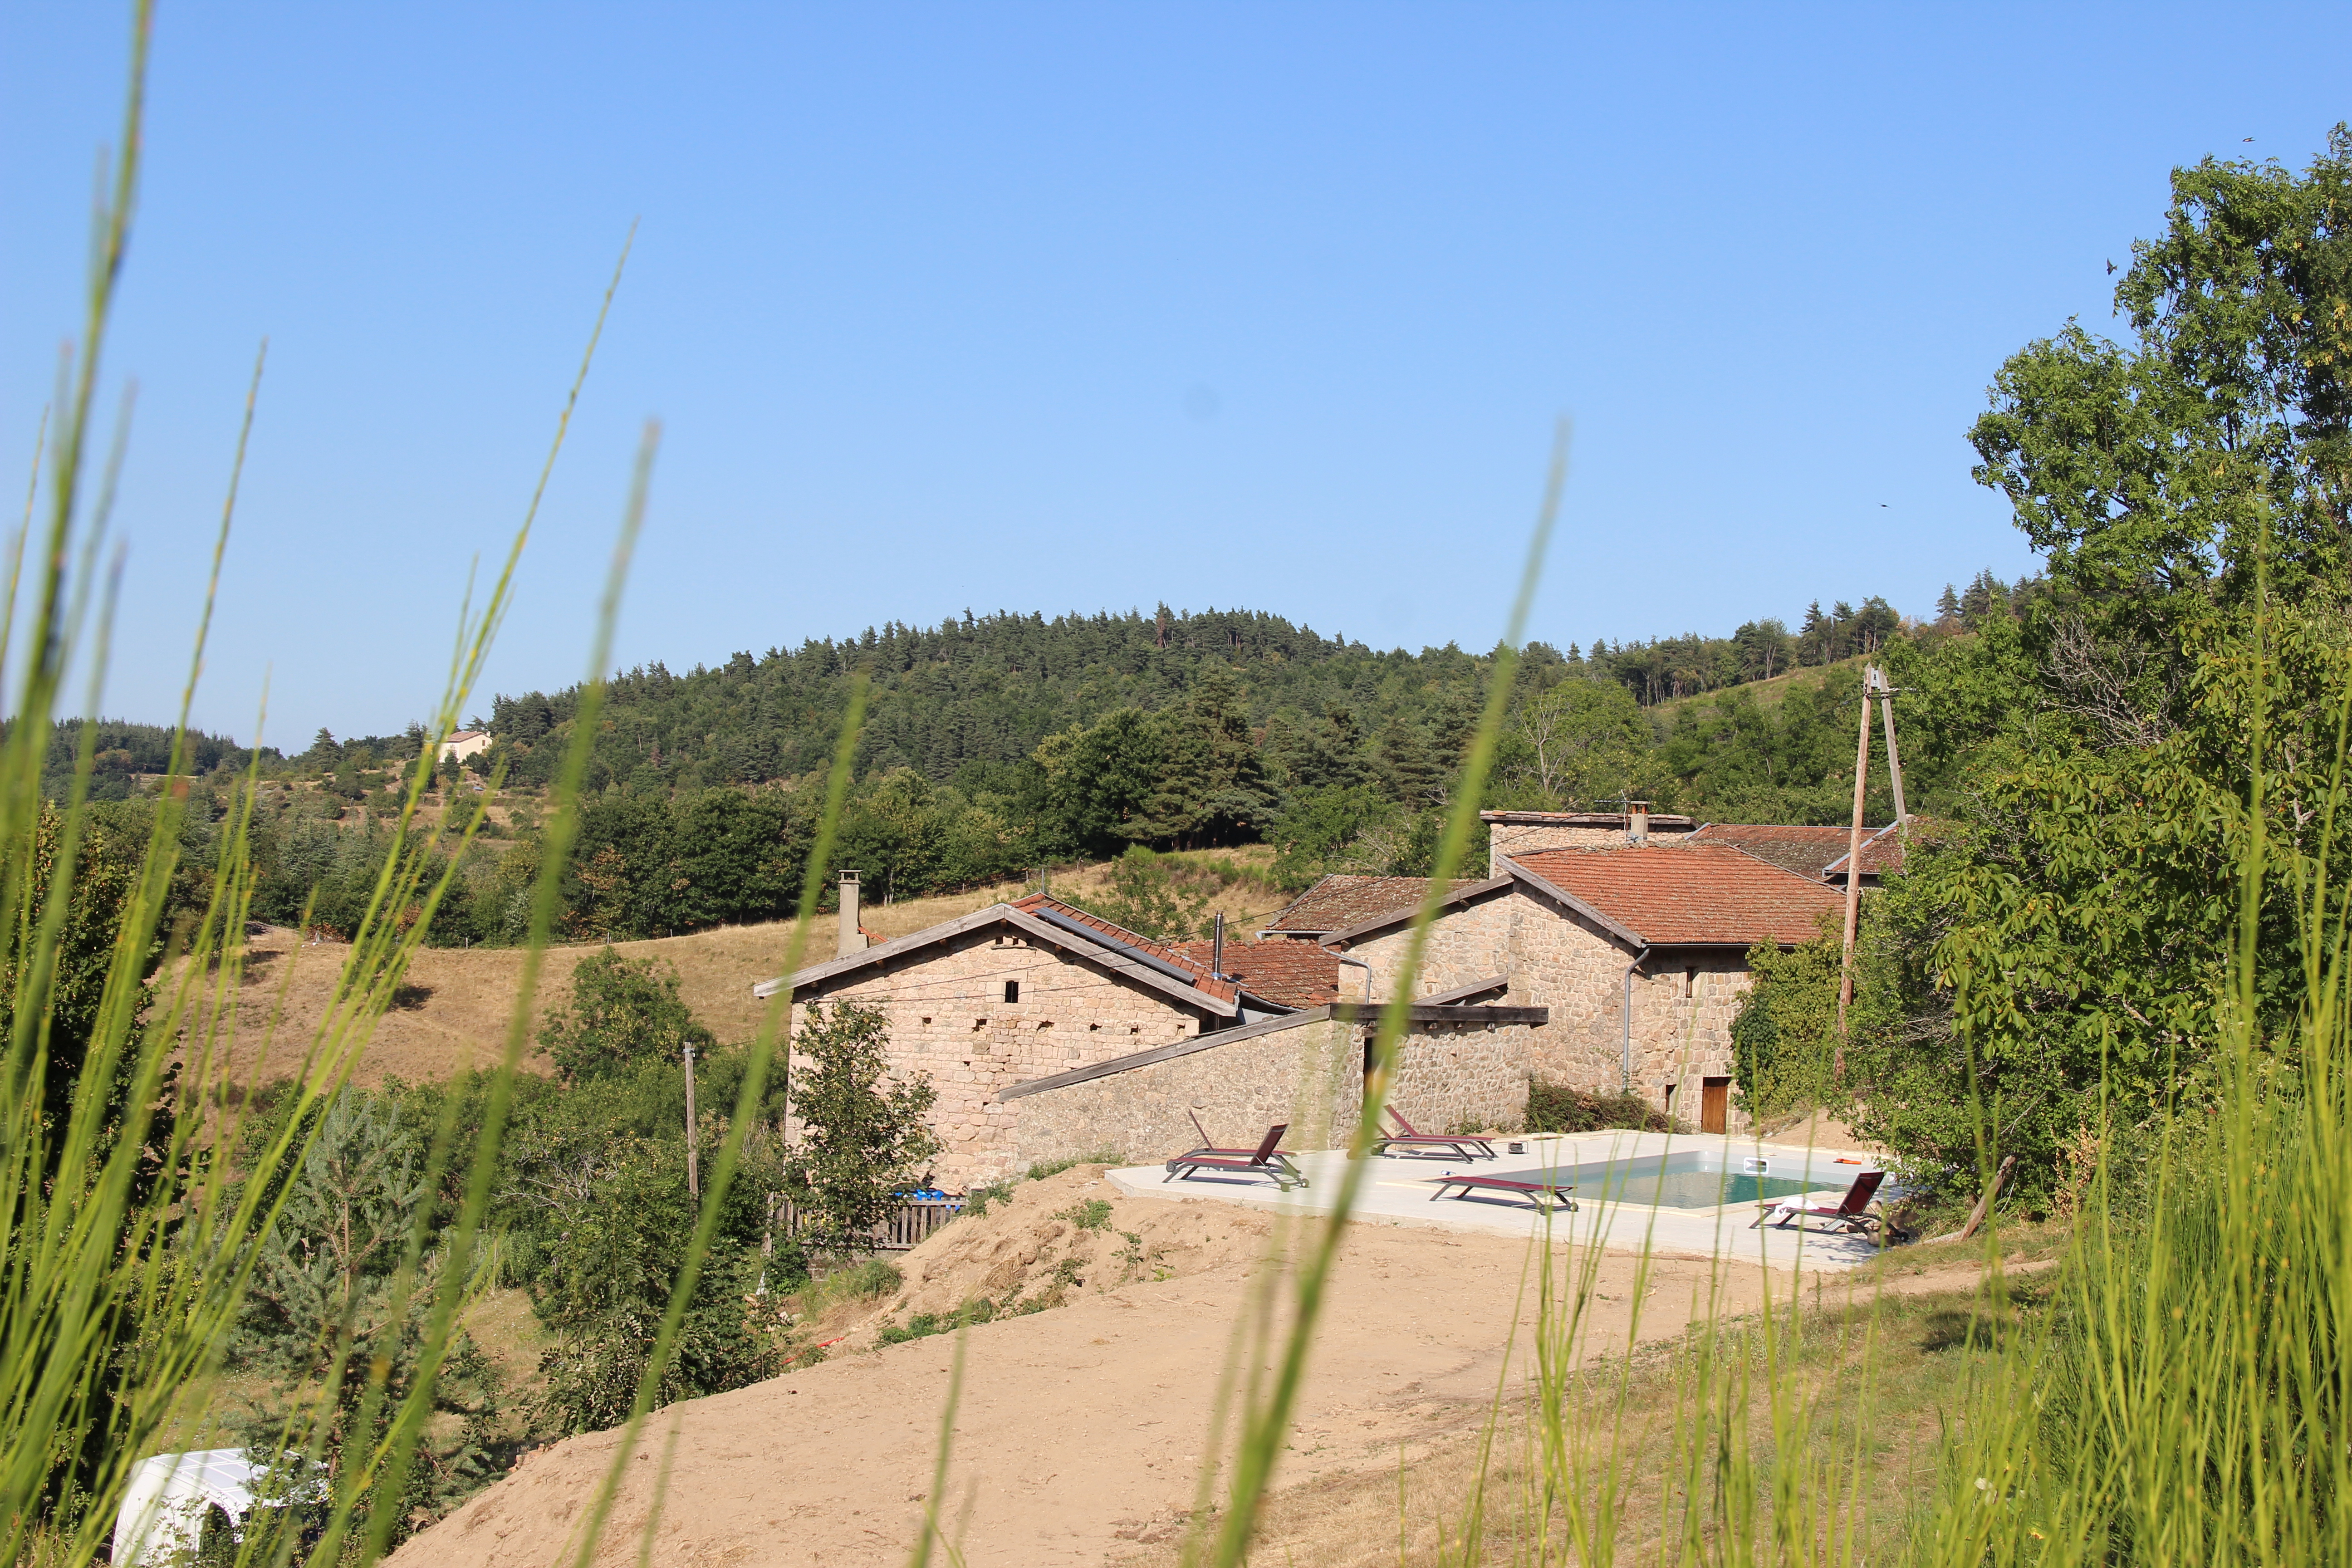 Paysage représentatif de la région d\'Ardèche. Contactez-nous pour planifier votre séjour et explorer cette magnifique destination.